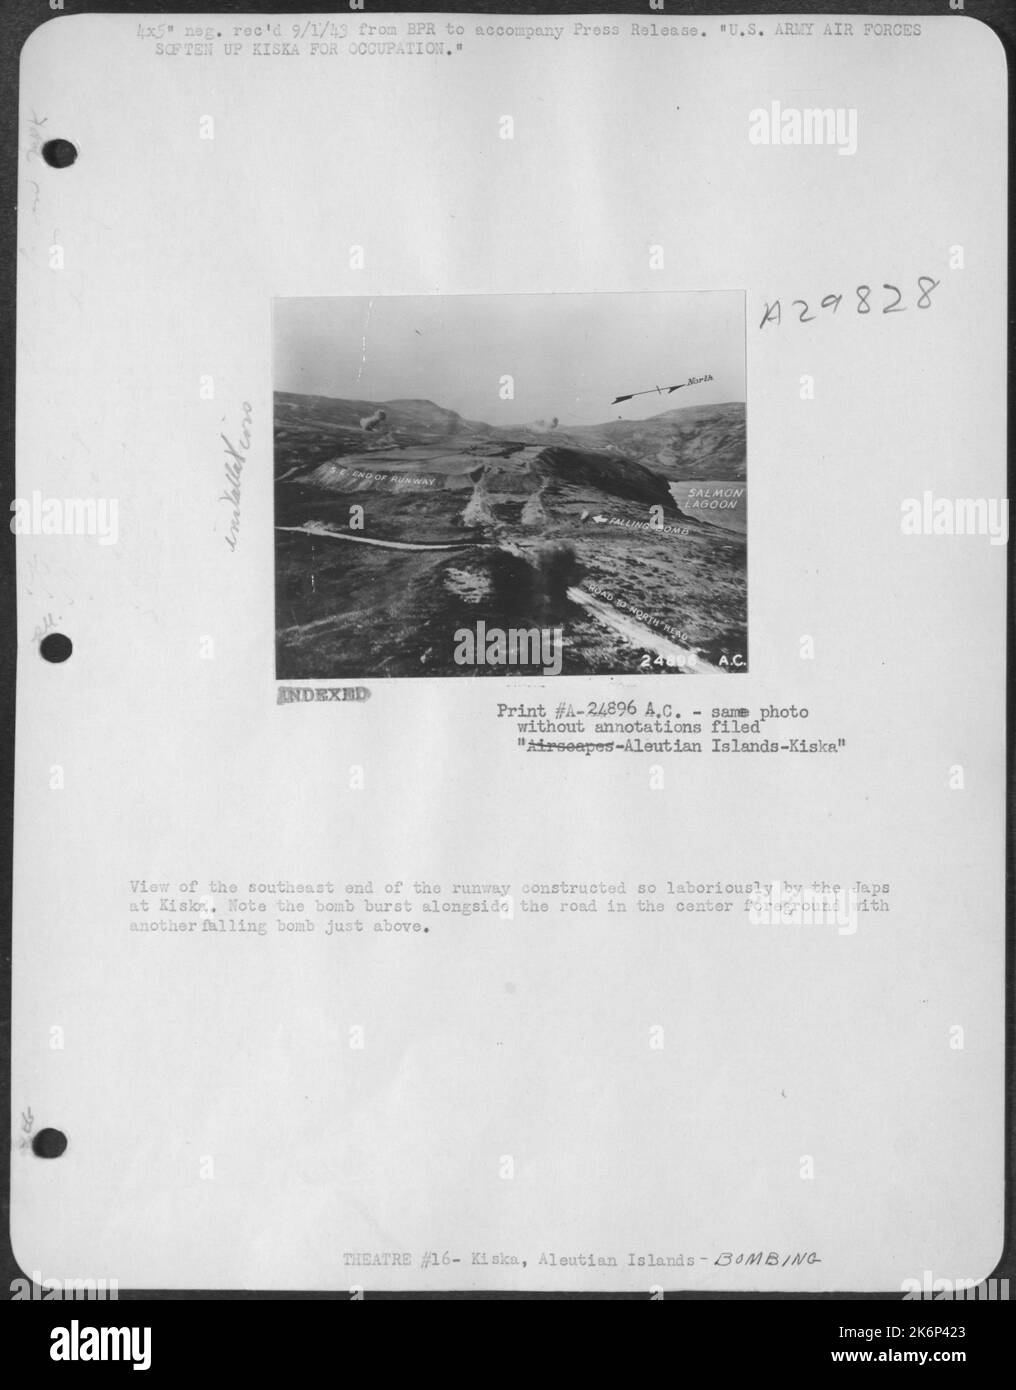 Blick auf das südöstliche Ende der von den Japanesen bei Kiska mühsam errichteten Start- und Landebahn. Beachten Sie, dass die Bombe neben der Straße in der Mitte im Vordergrund platzte und eine weitere Bombe direkt darüber fiel. Stockfoto